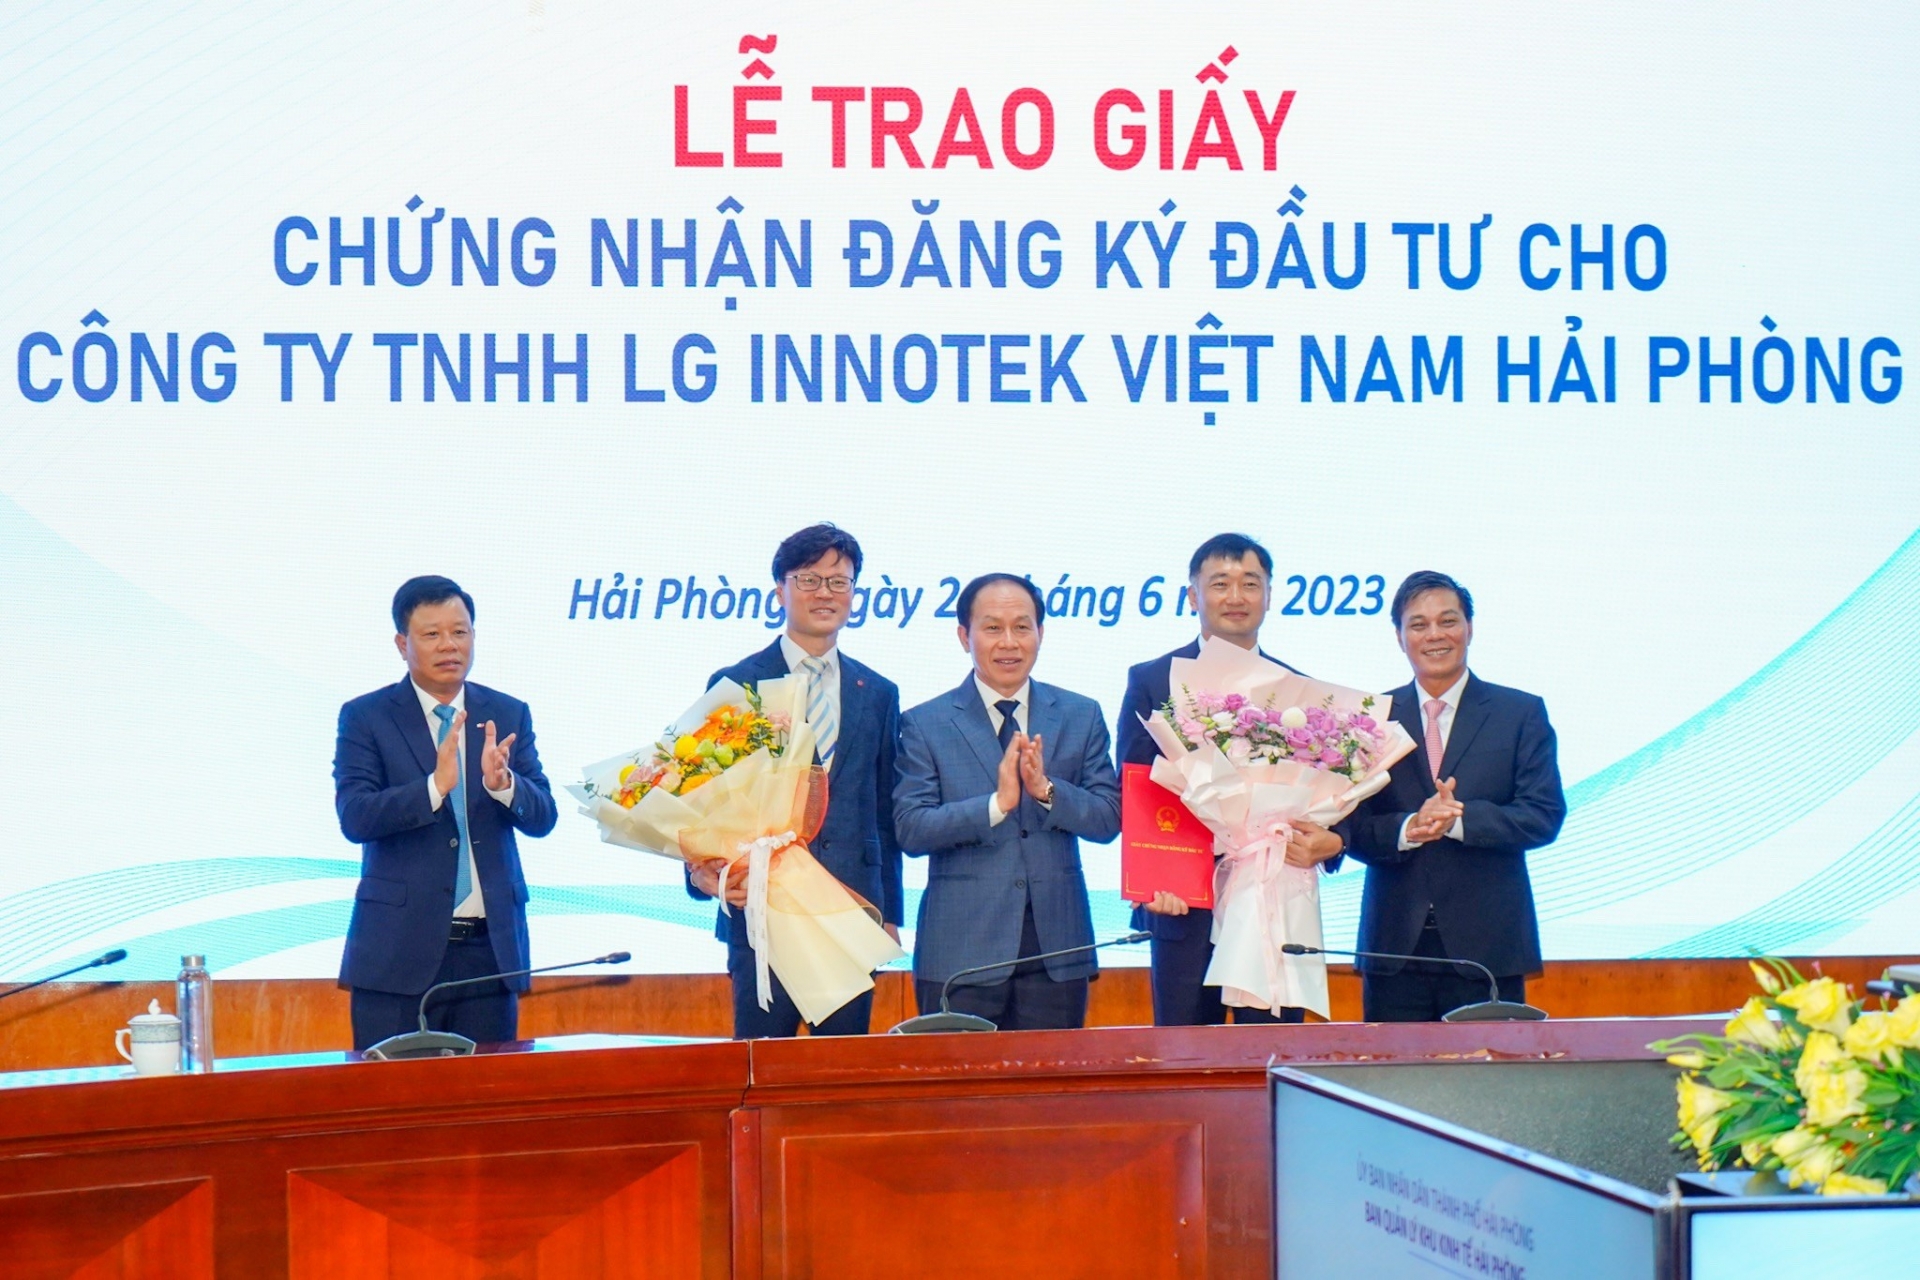 Trao Giấy chứng nhận đăng ký đầu tư điều chỉnh tăng vốn cho Công ty TNHH LG Innotek Việt Nam Hải Phòng